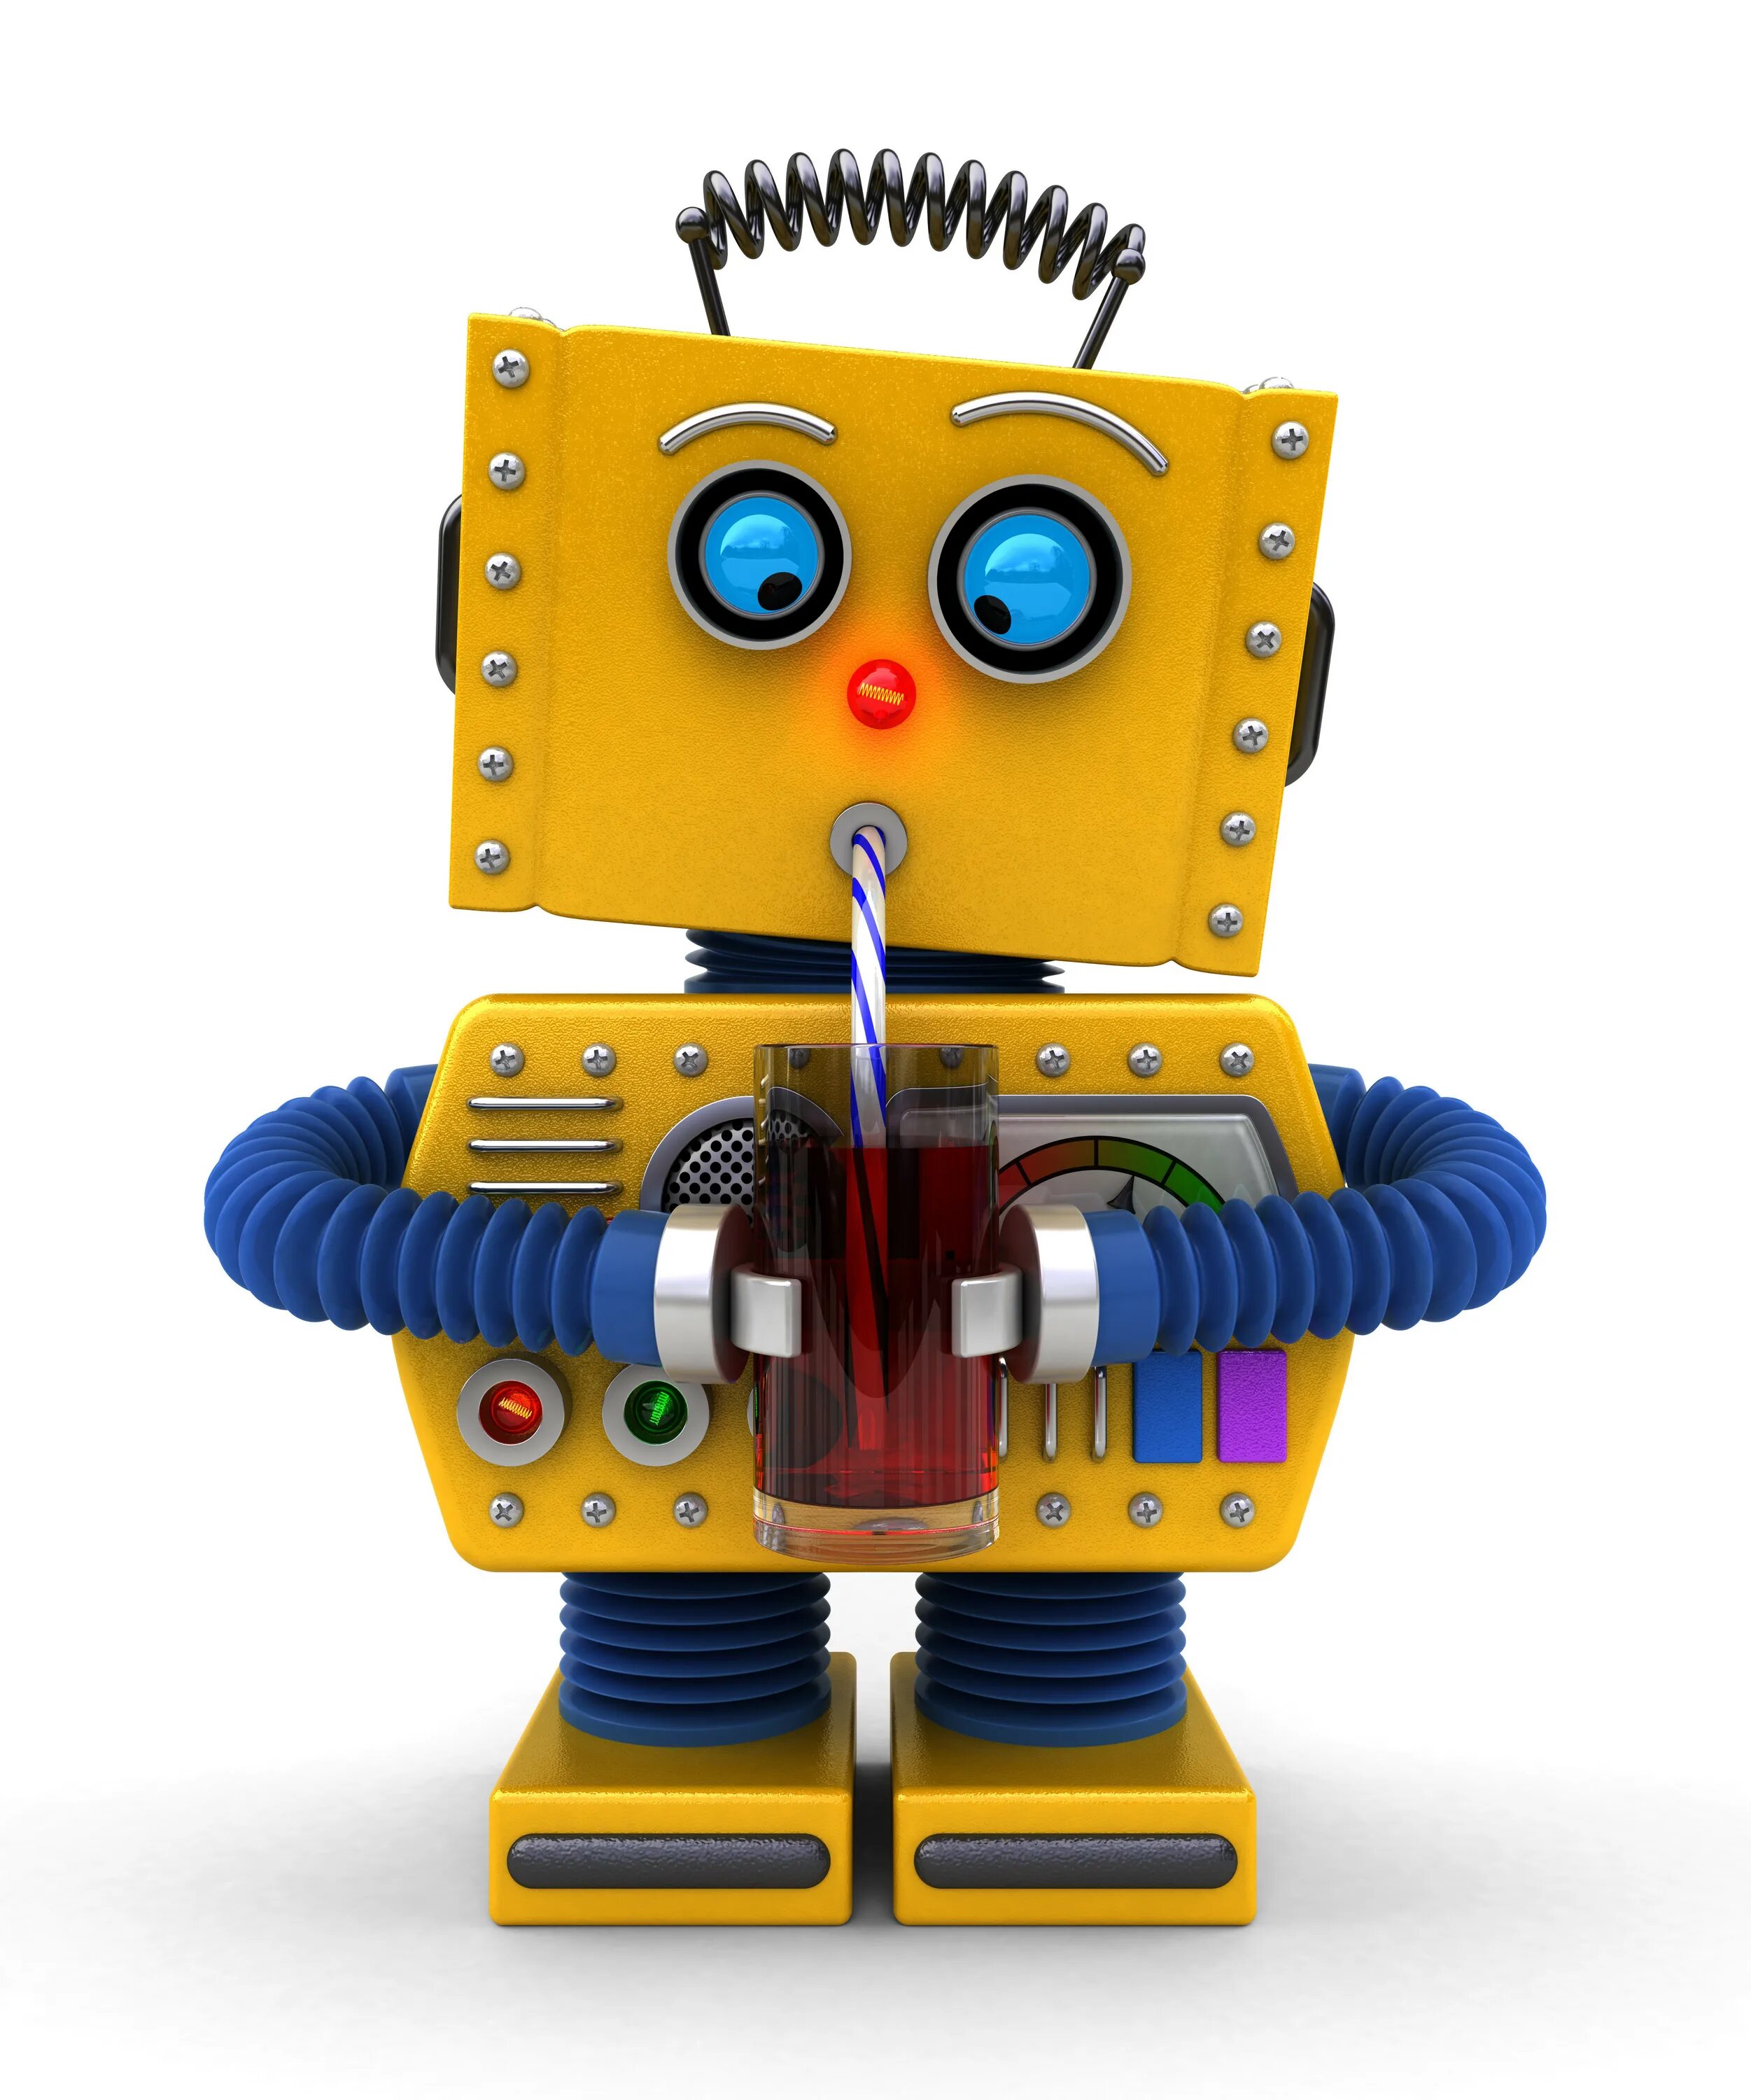 Веселый робот. Веселый робот для детей. Весёлый робот игрушка. Желтый робот игрушка. Малыш в желтом робот